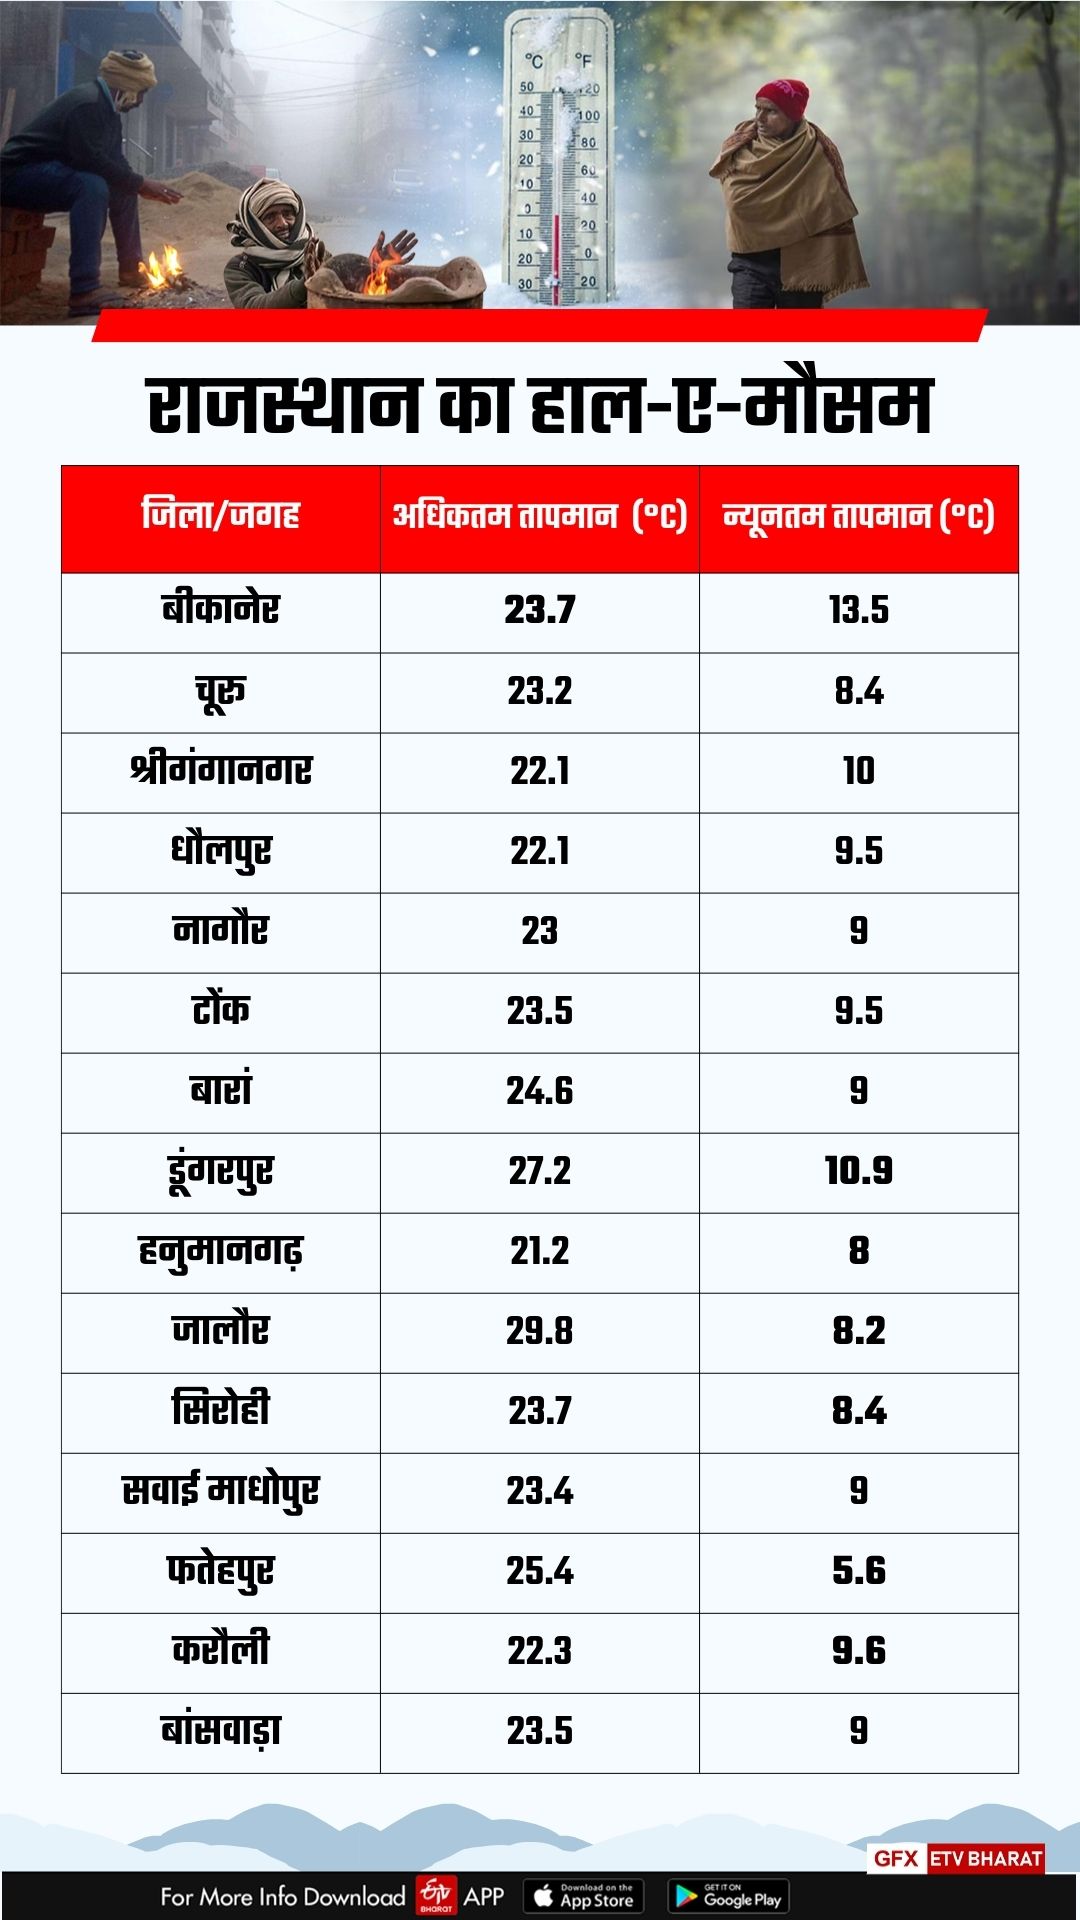 Maximum and minimum temperature in Rajasthan